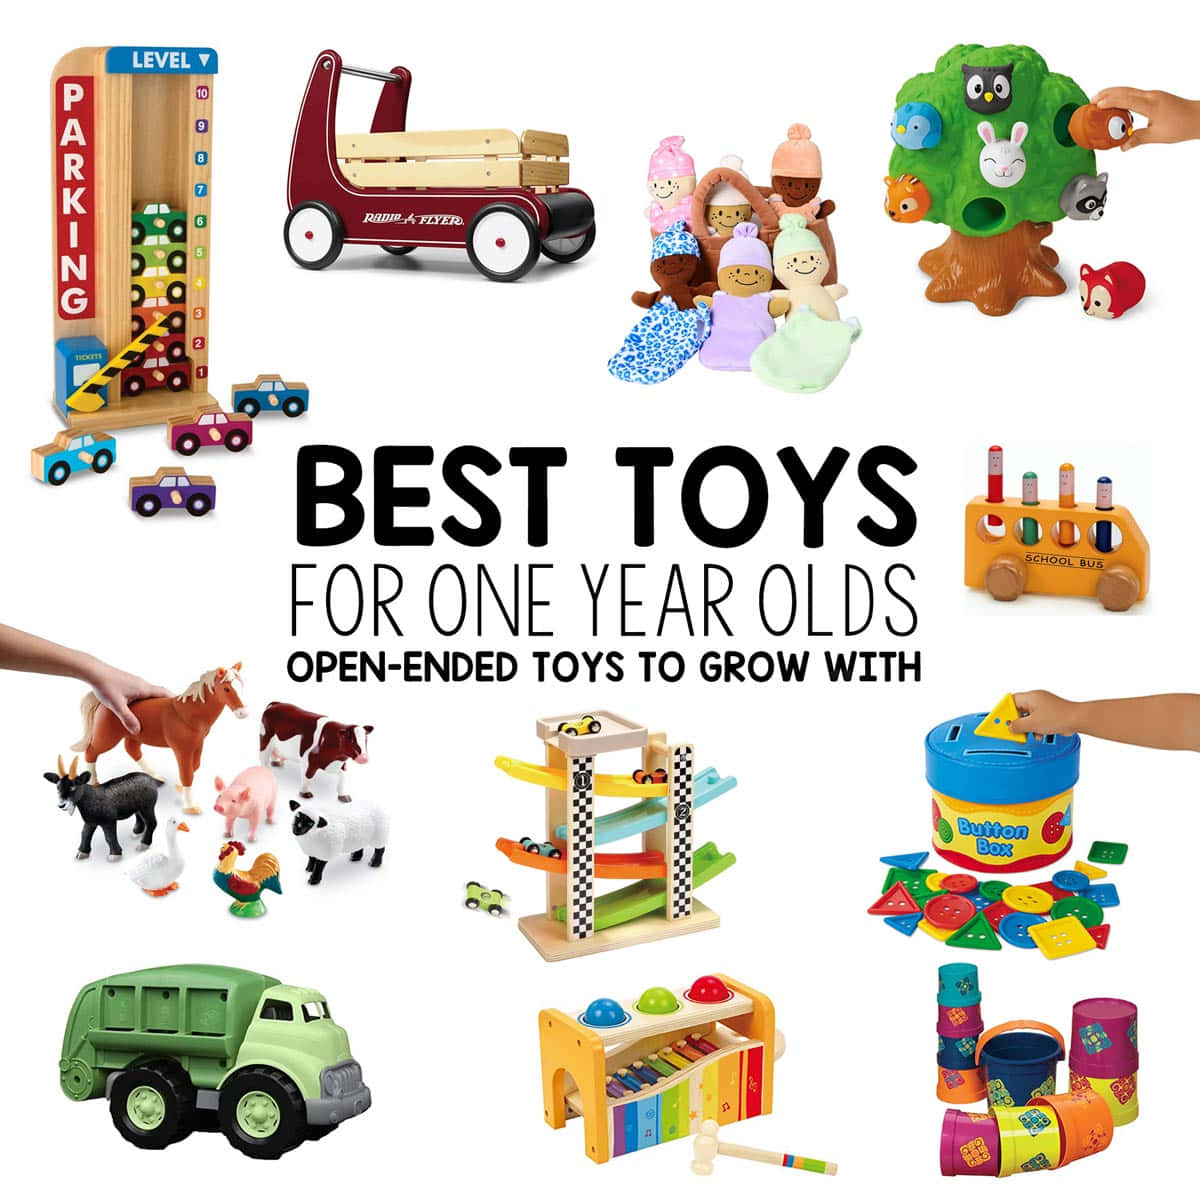 Einesammlung Bunter, Spaßiger Spielzeuge, Perfekt Für Jedes Kind!